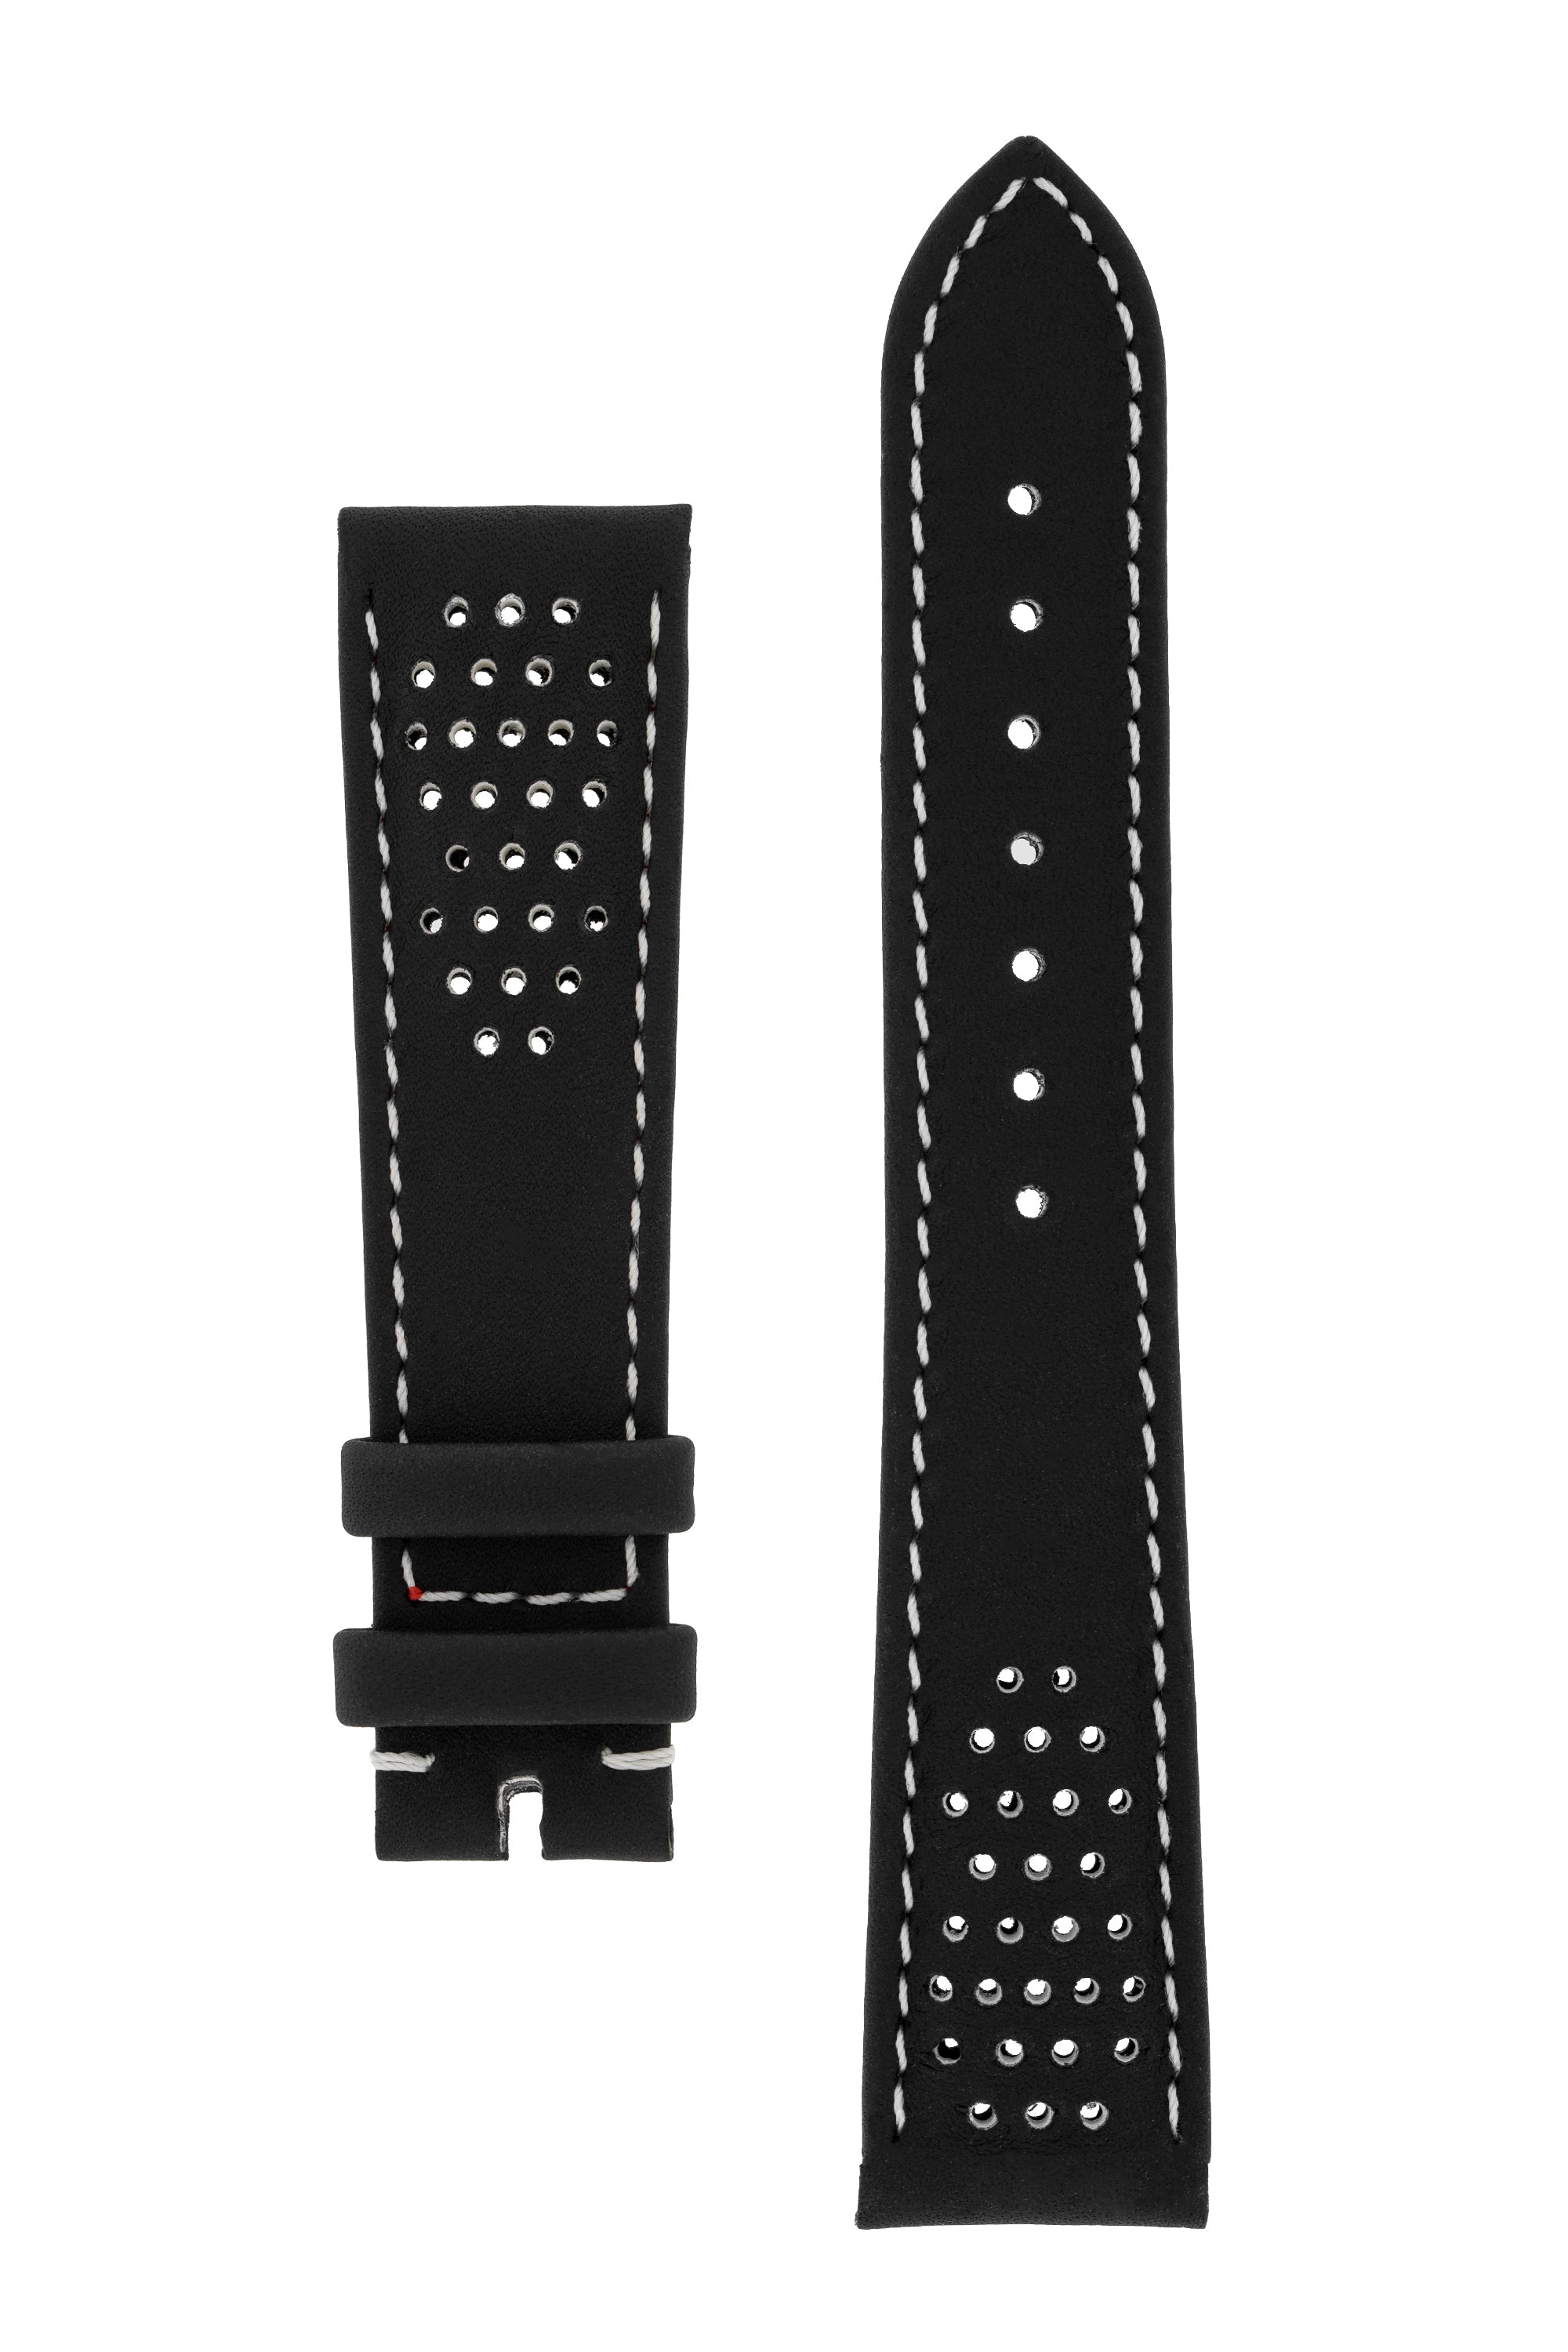 OMEGA Speedmaster CK2998 Leather Watch Strap in BLACK CUZ009780 ...